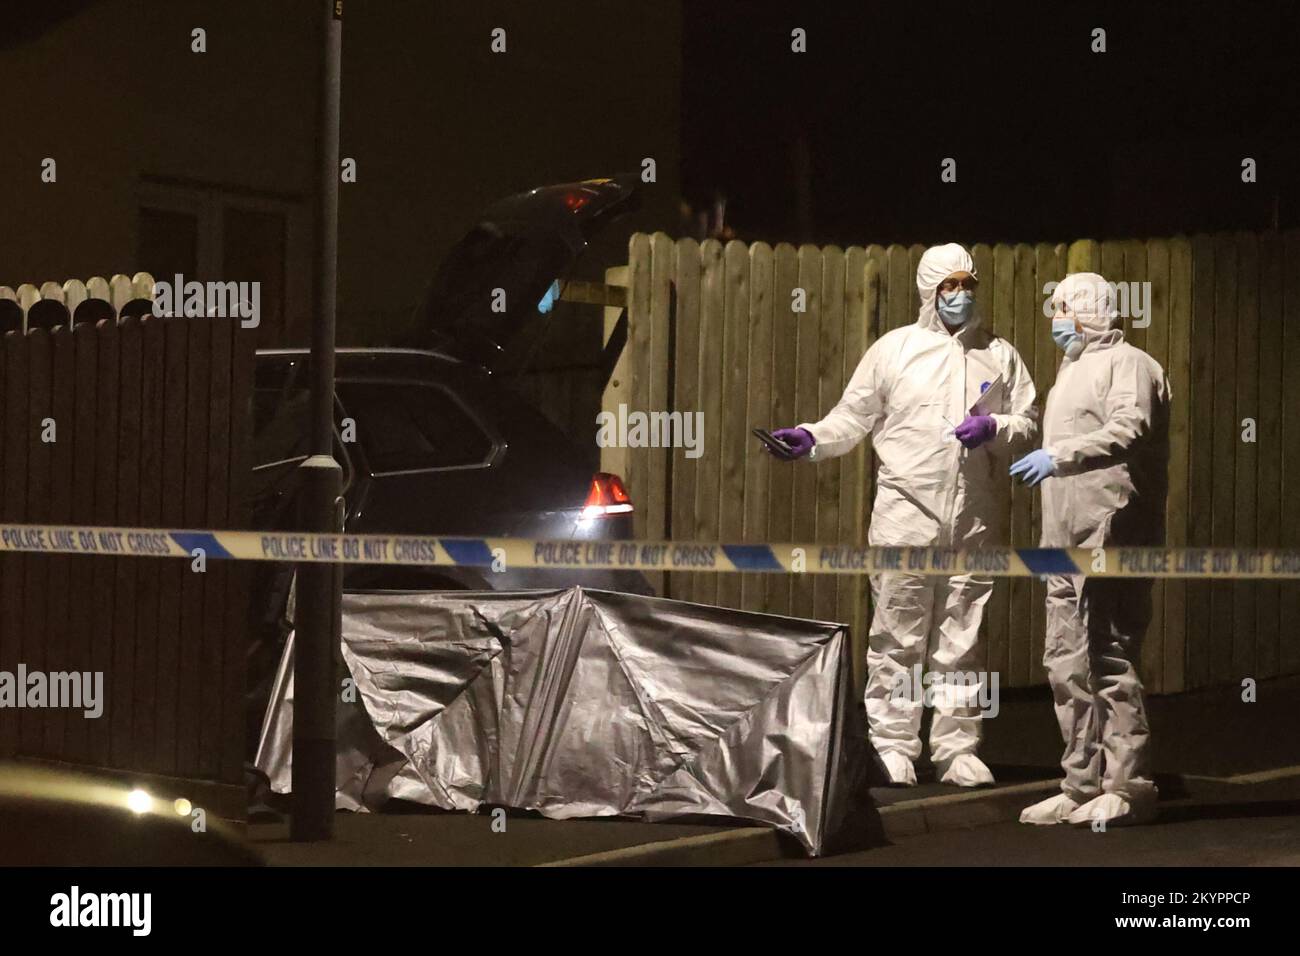 MIGLIOR QUALITÀ DISPONIBILE ufficiali Forensic sulla scena di un tiro fatale nella zona del Parco Ardcarn di Newry il Giovedi sera in cui un uomo è morto. Foto Stock